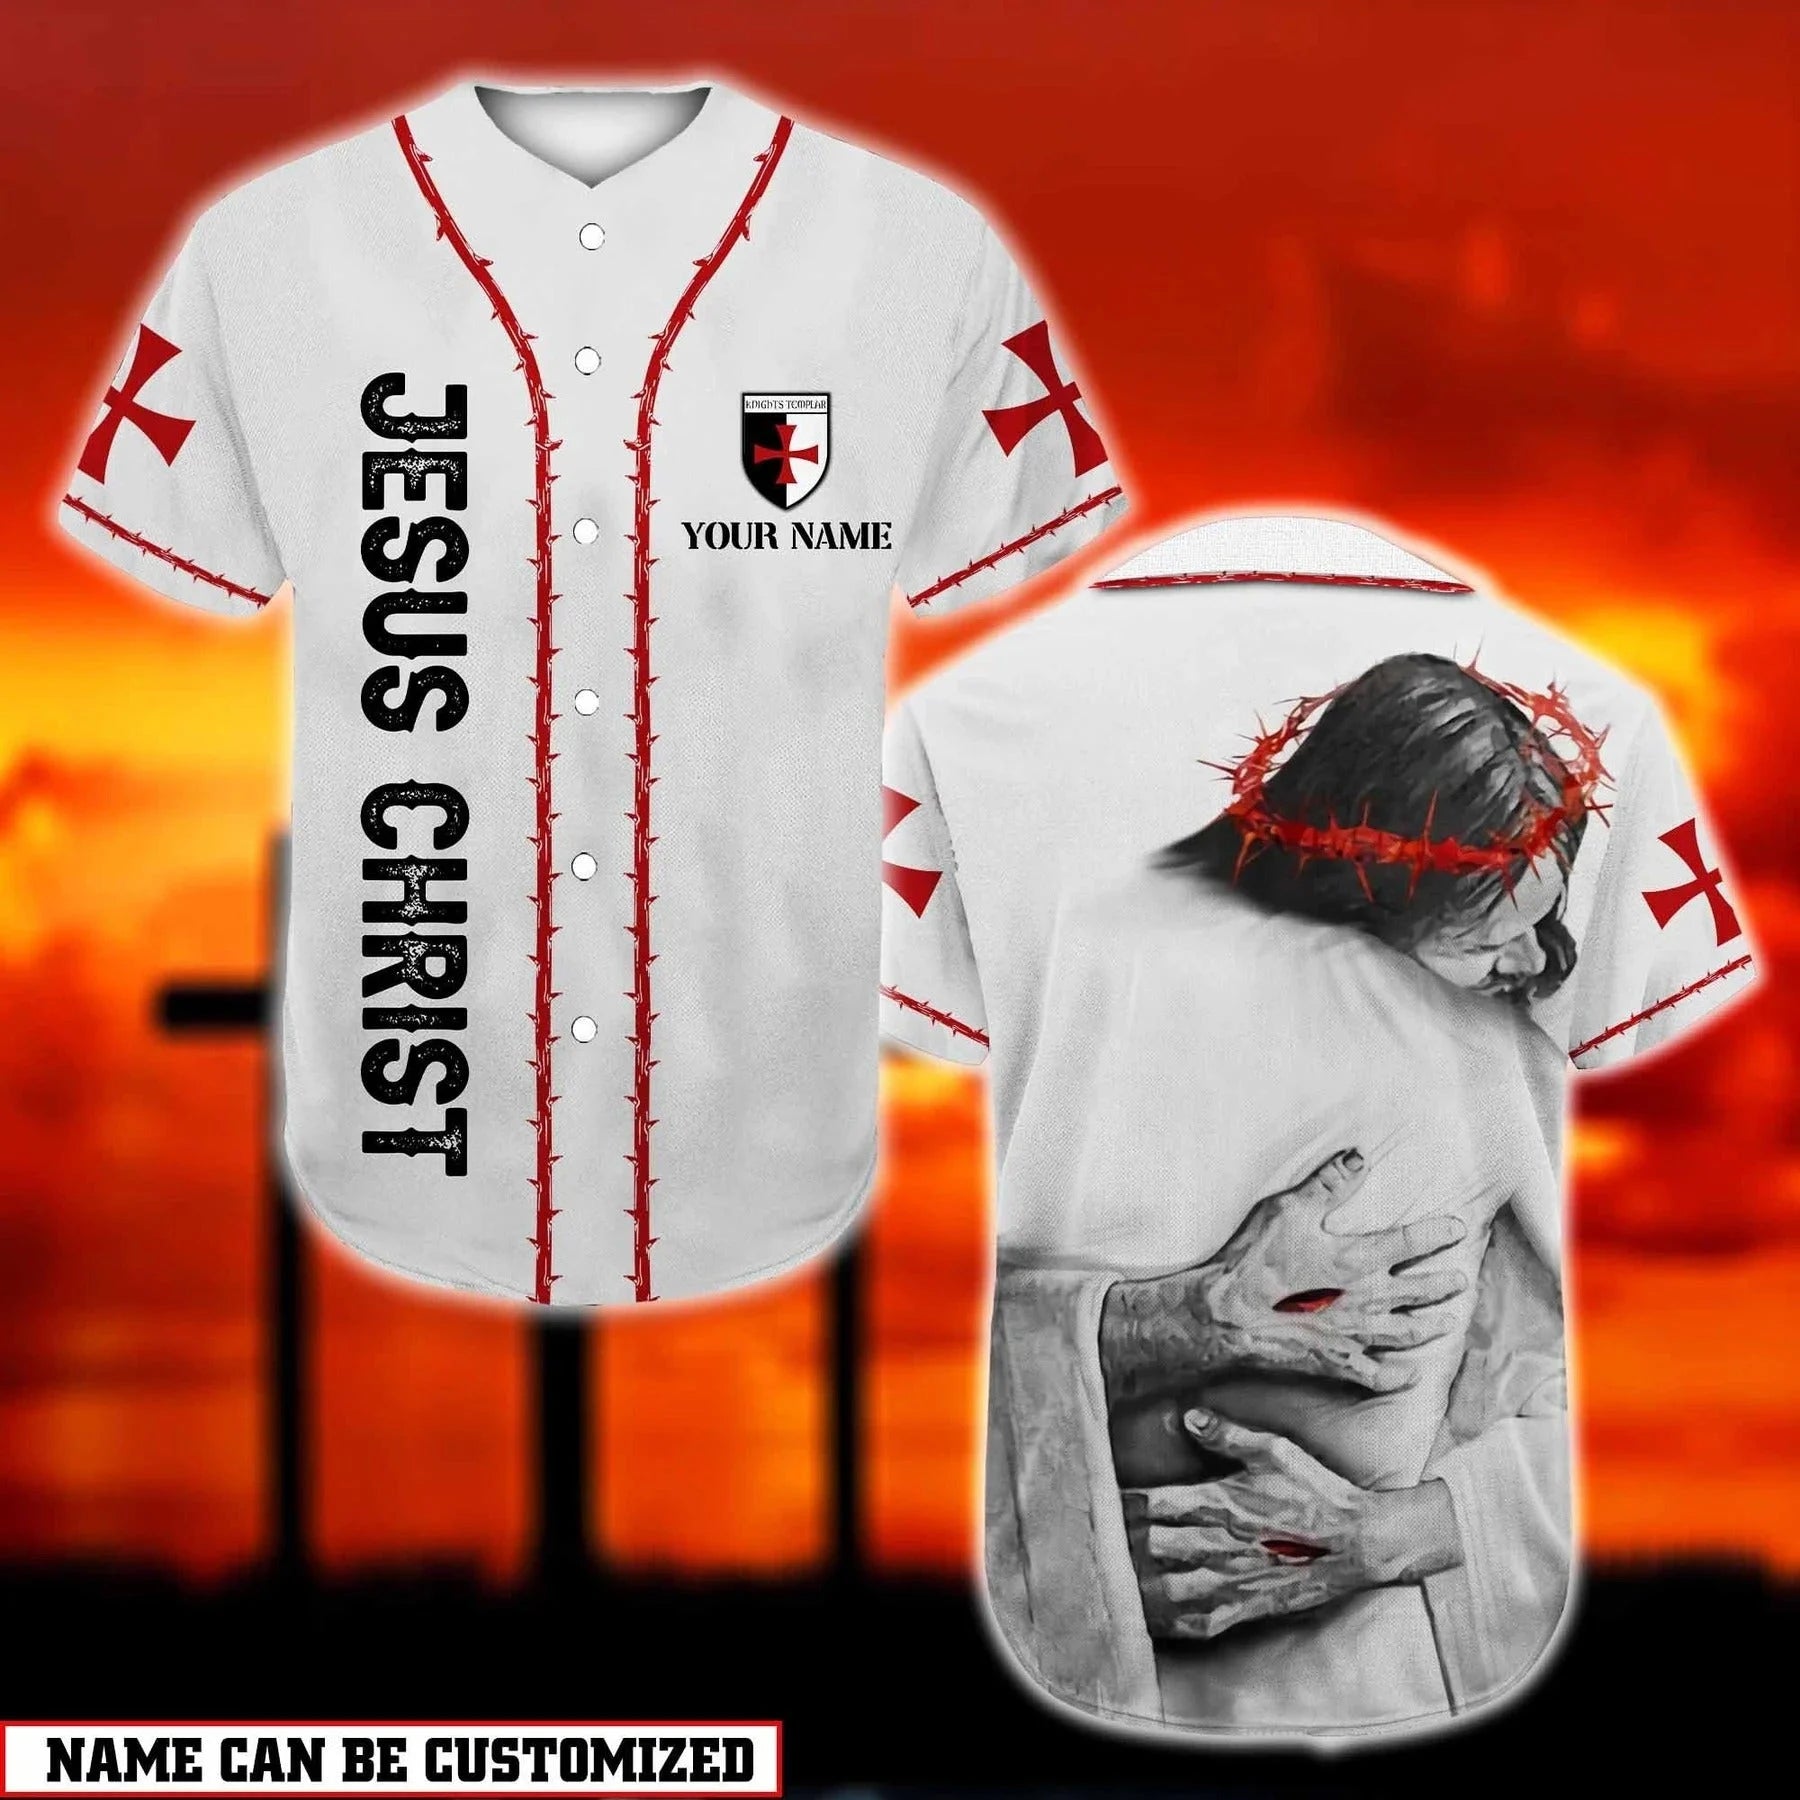 Personalized Jesus Baseball Jersey - God Hug Baseball Jersey - Gift For Christians - God Is Love Custom Printed 3D Baseball Jersey Shirt For Men Women